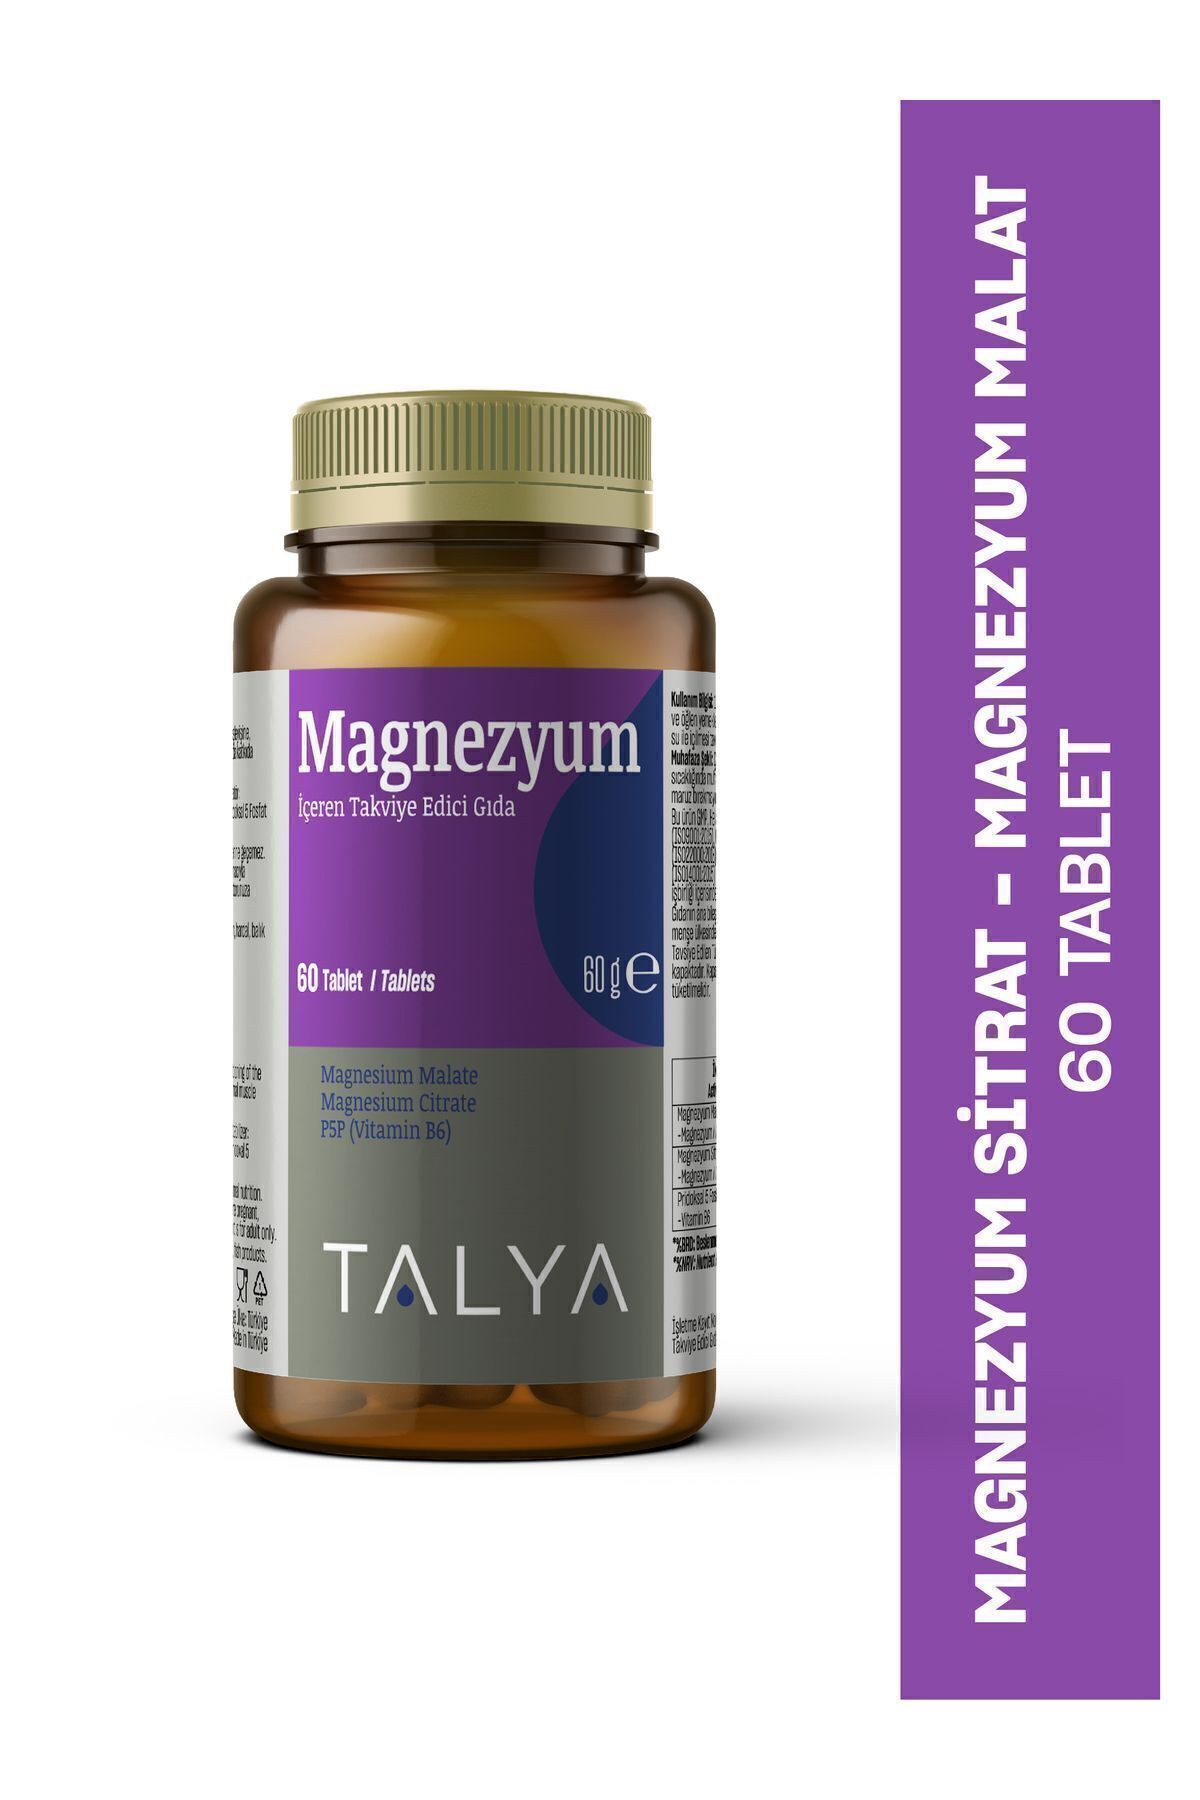 Talya Magnezyum Malat Magnezyum Sitrat Vitamin B6 Içeren Takviye Edici Gıda, 60 Tablet